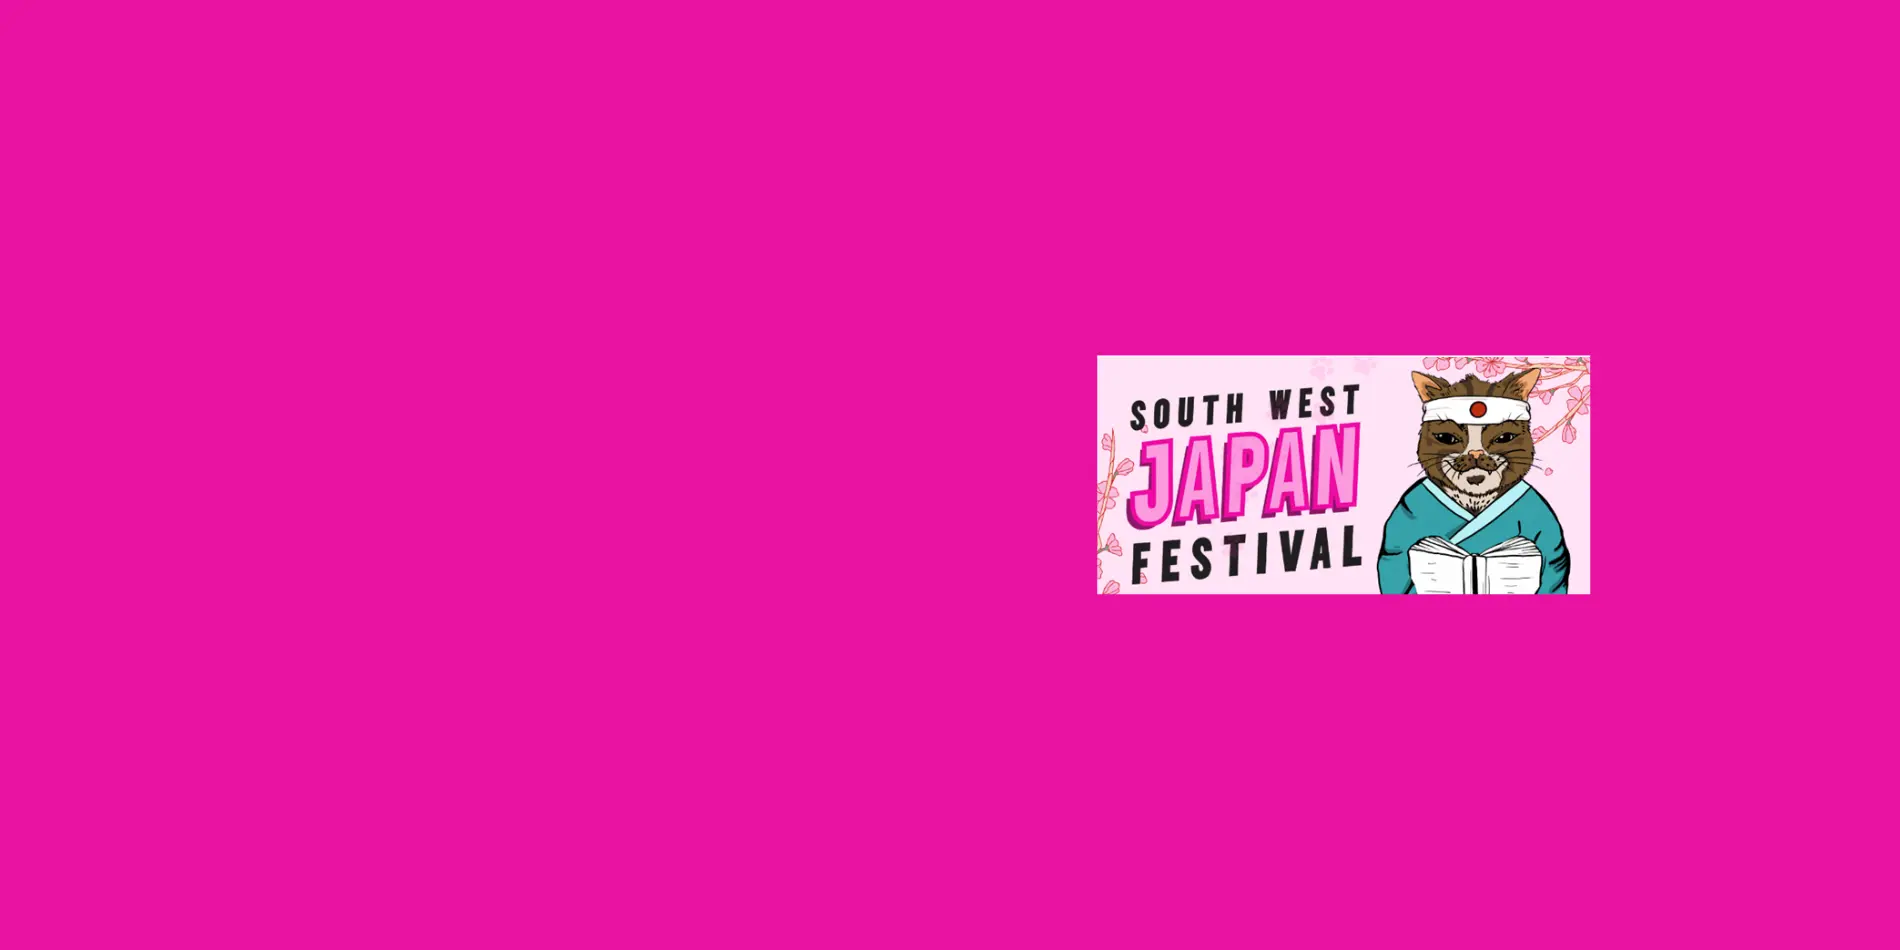 South West Japan Festival.